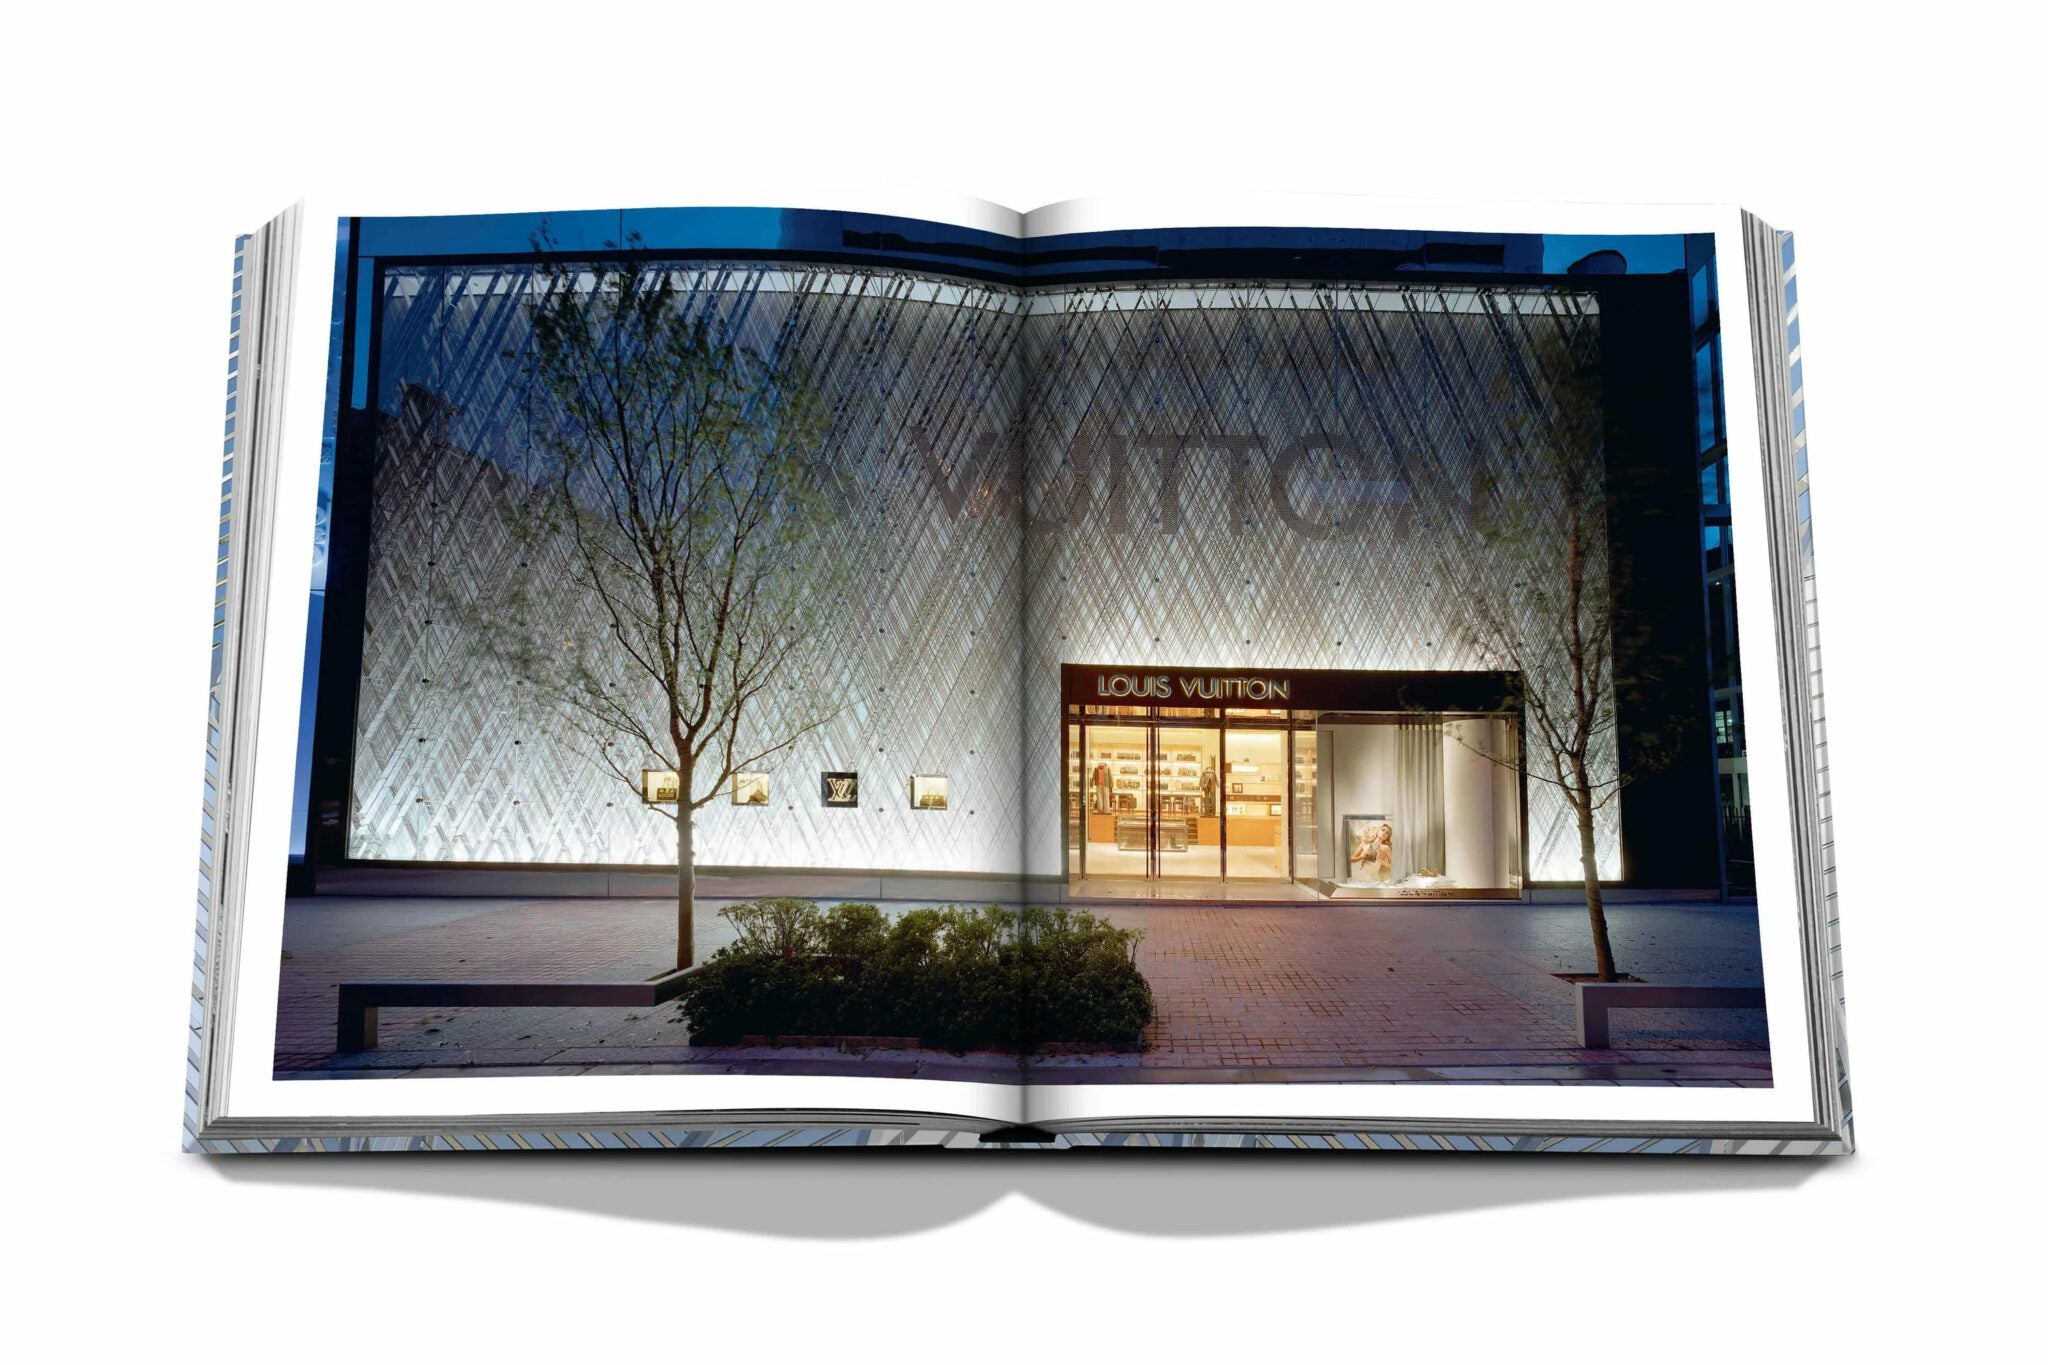 Assouline Louis Vuitton Skin: Luksusarkkitehtuuri (Tokyo Edition)